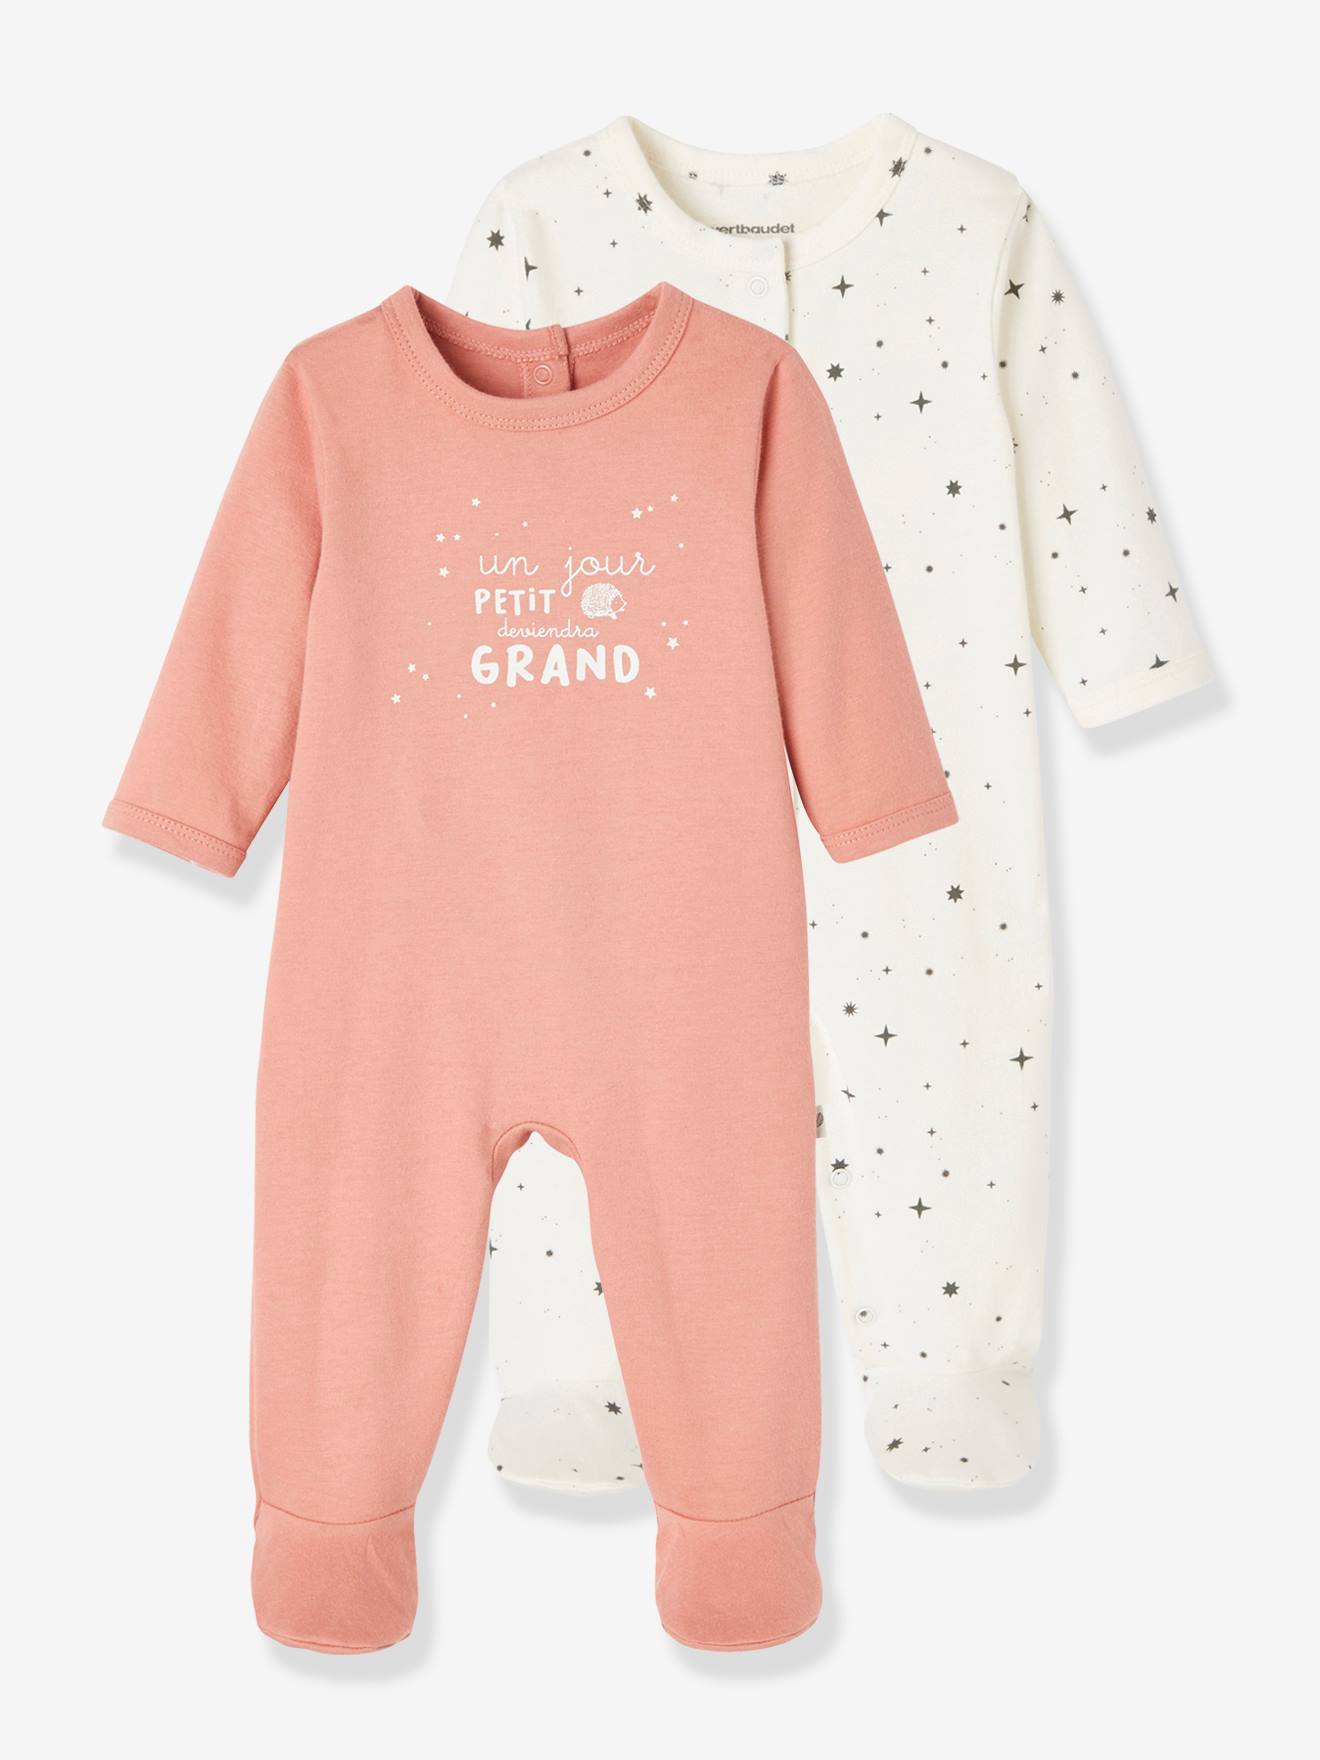 Pack de 2 pijamas para bebé de algódon orgánico Granja 6-9 meses